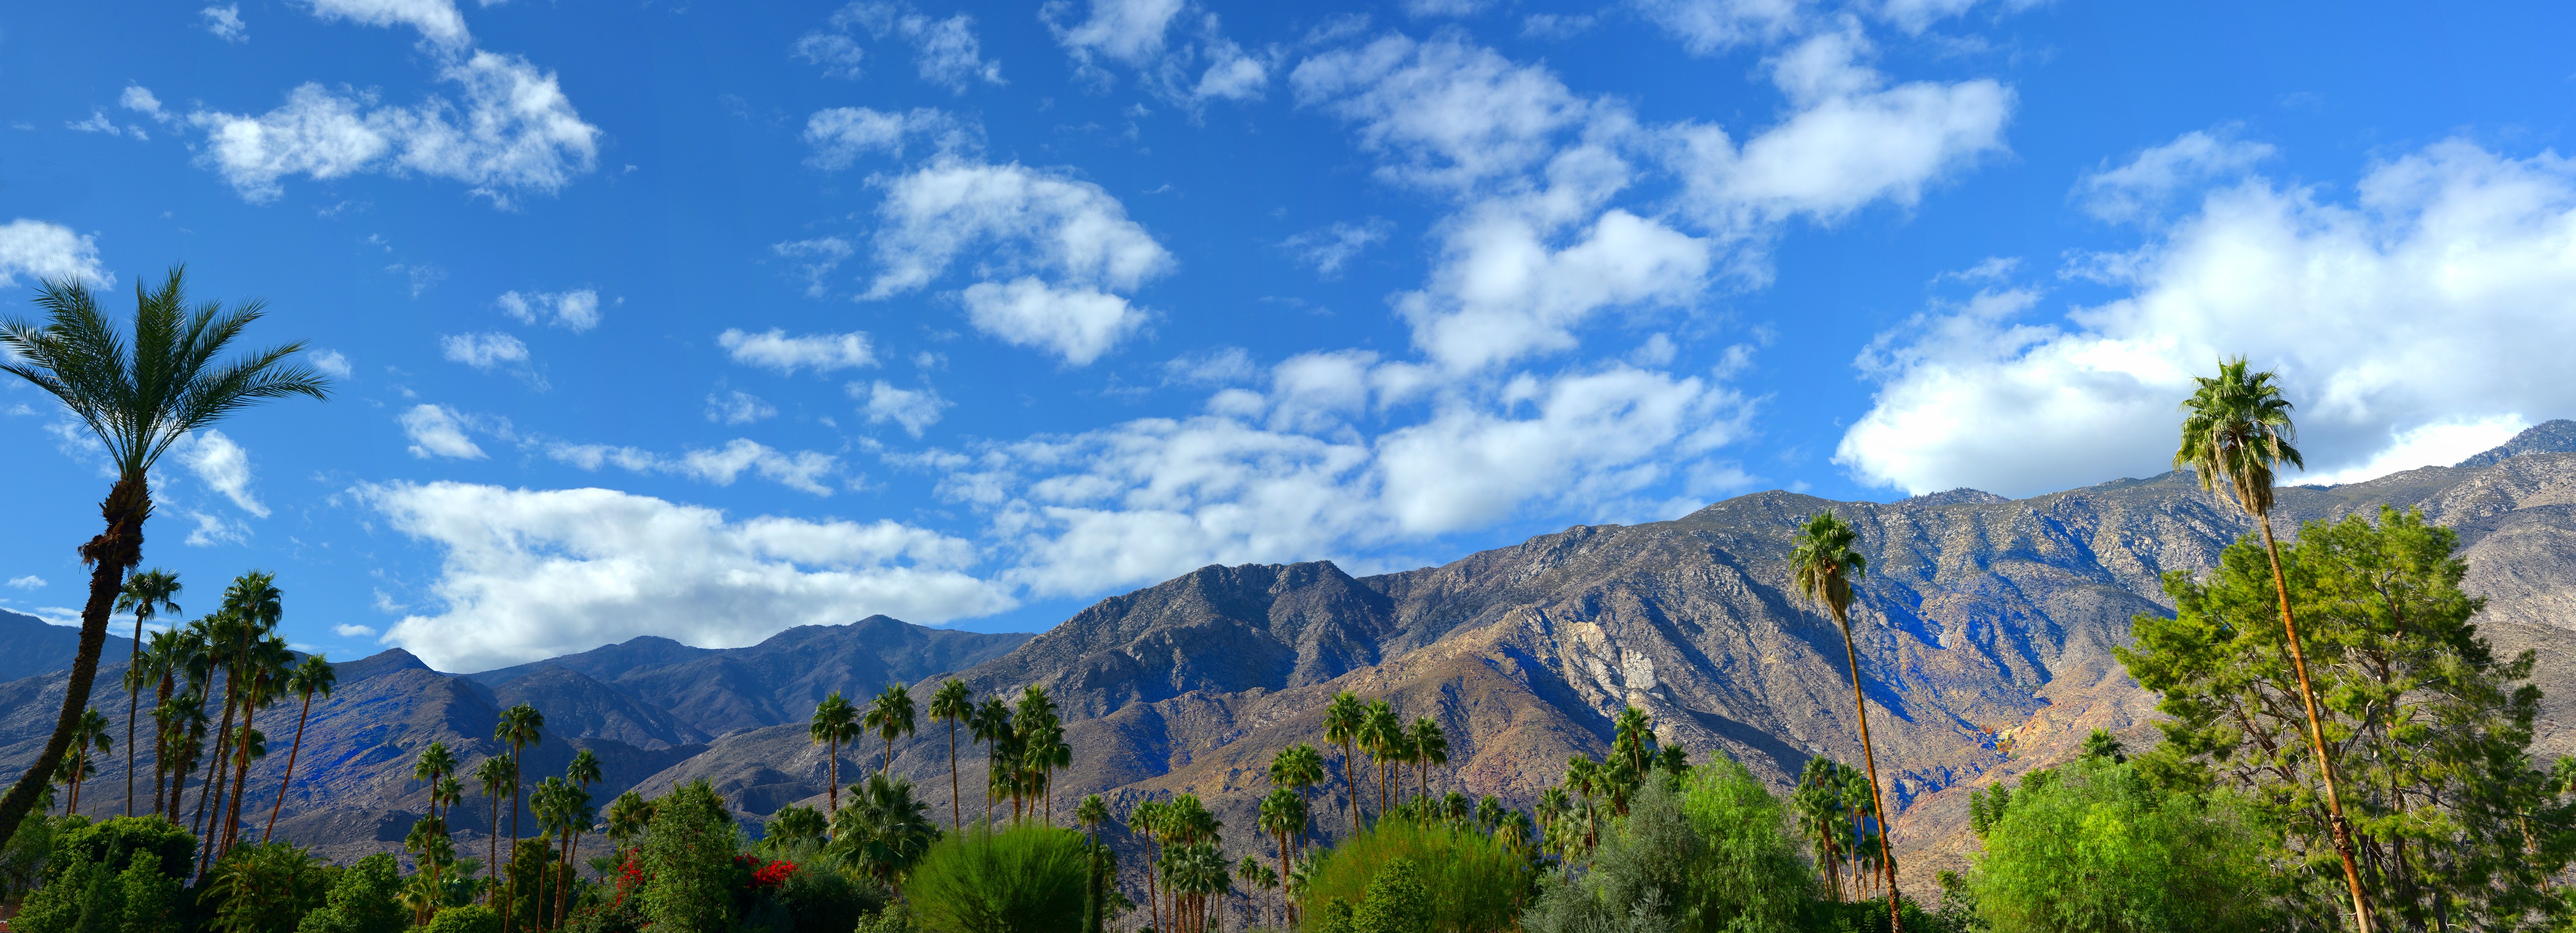 5 choses à faire sans portefeuille à Palm Springs 